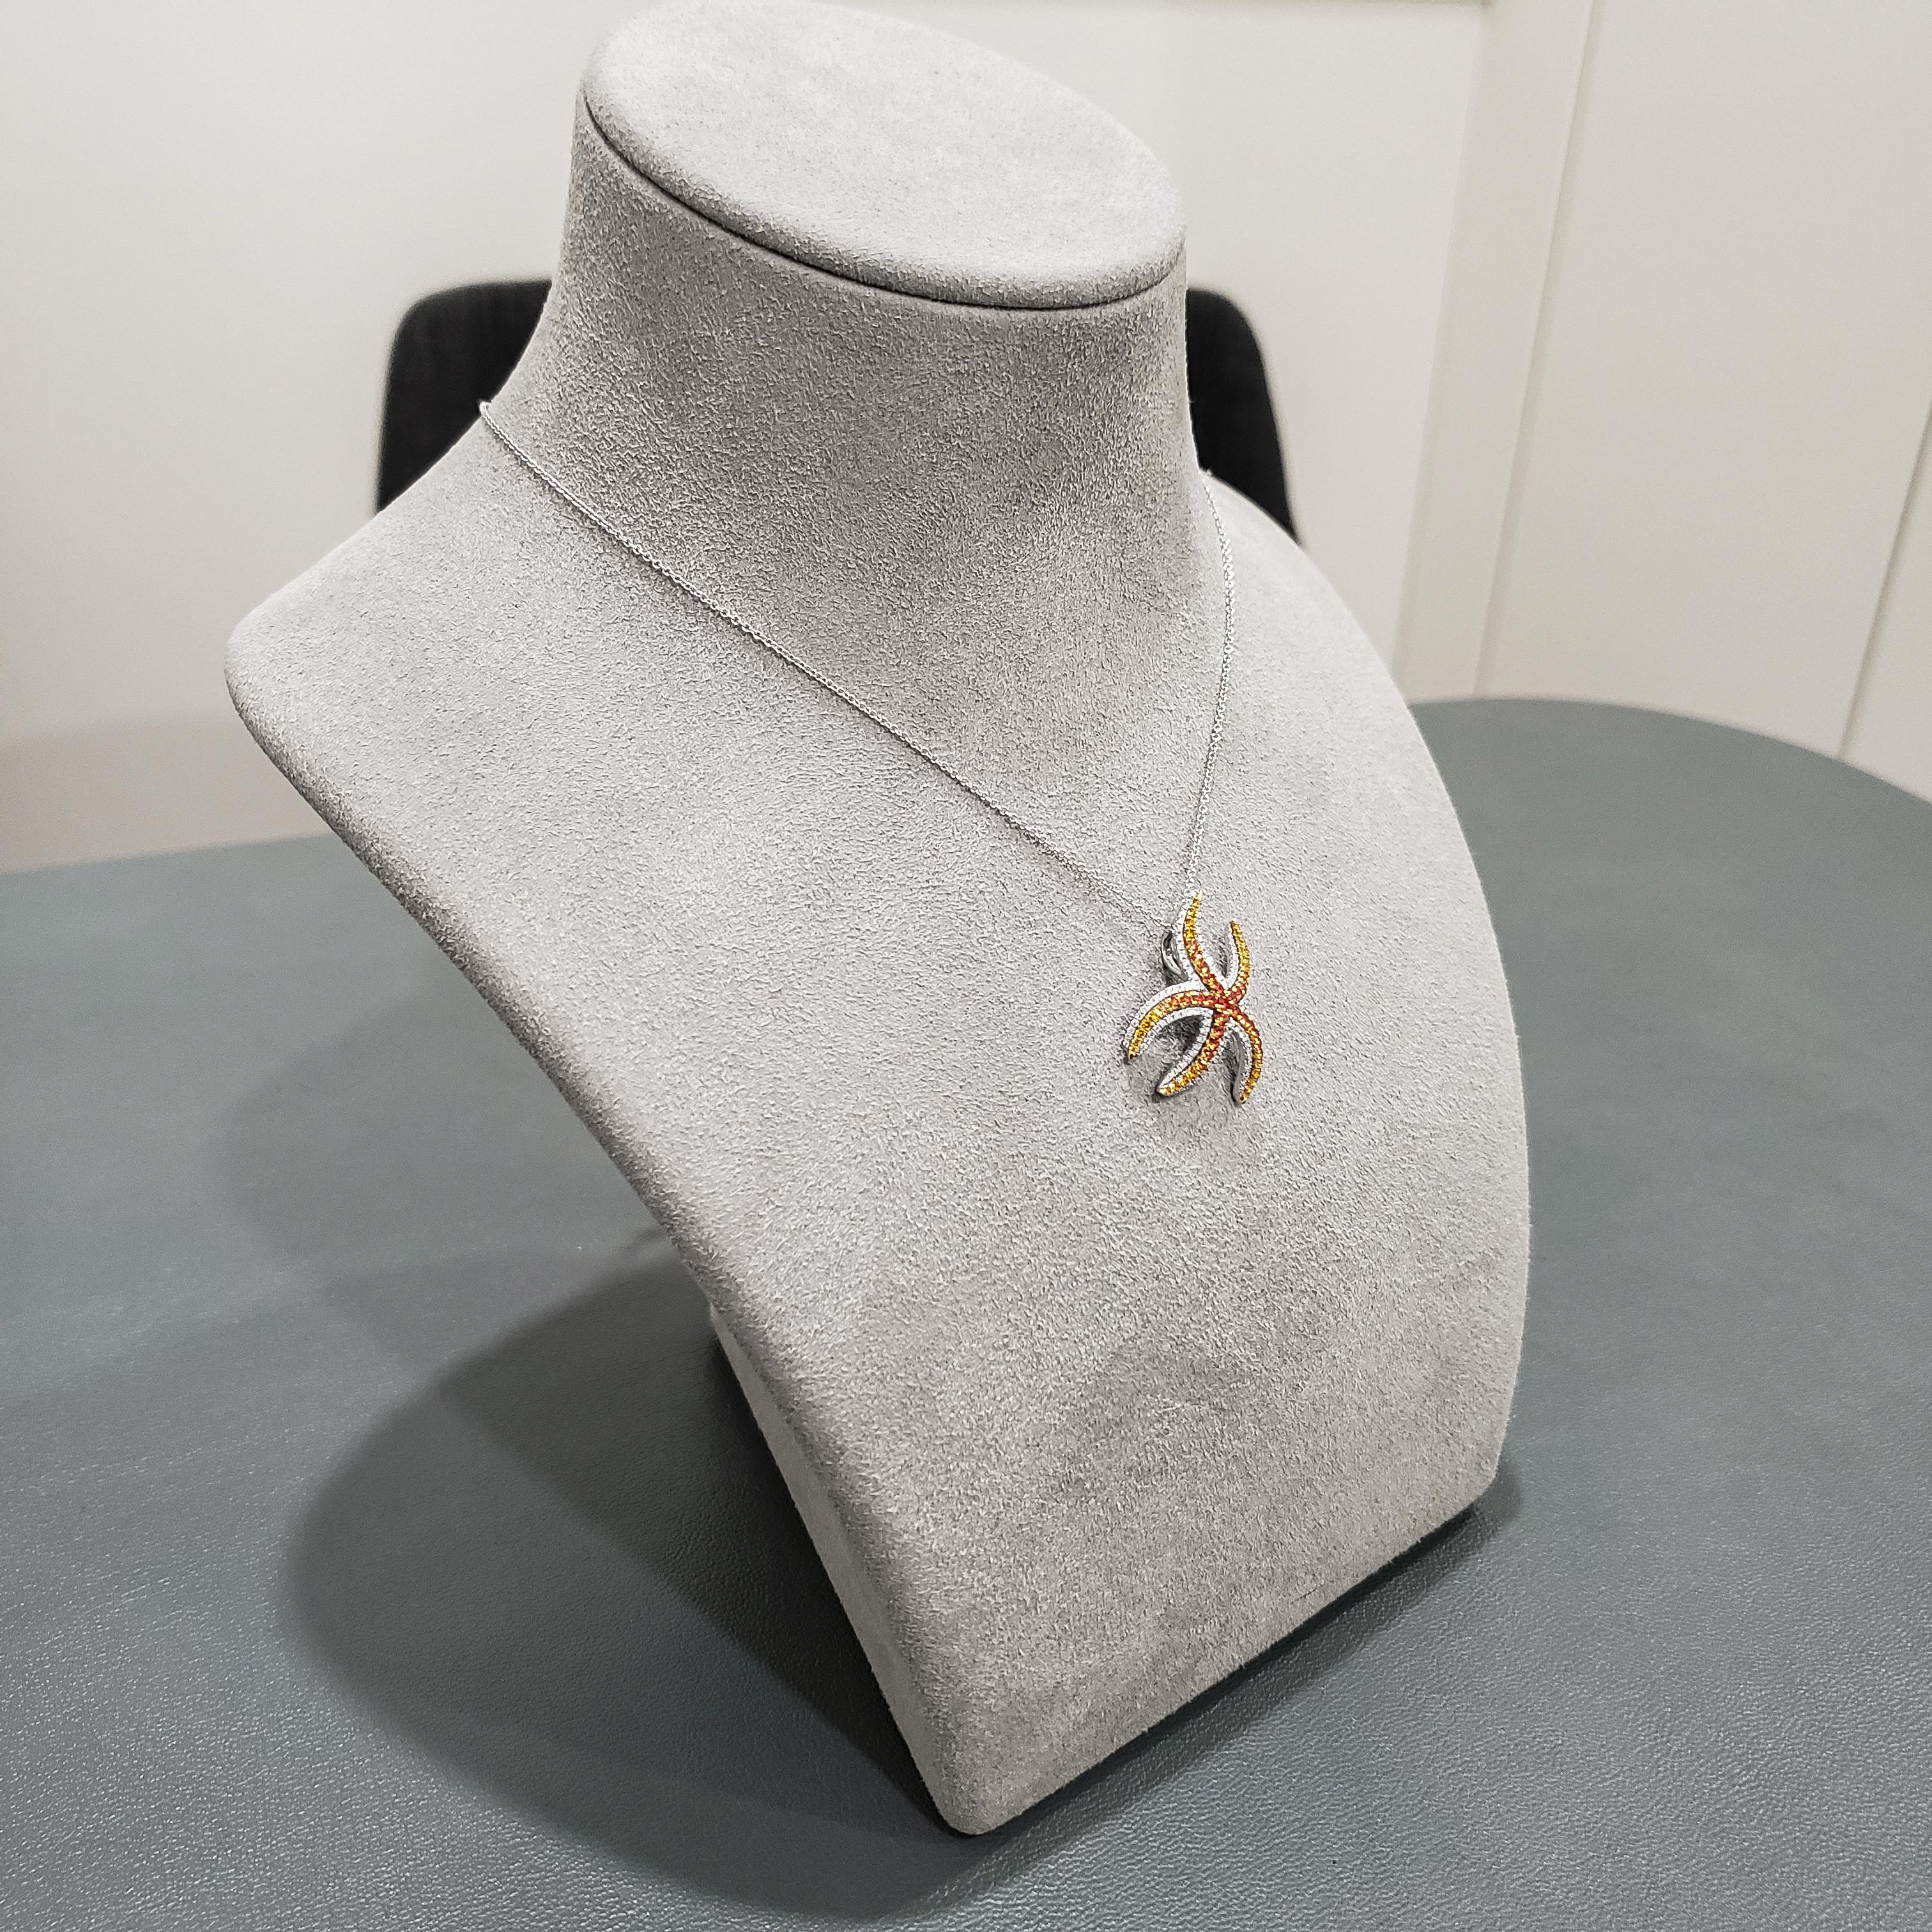 Contemporary Roman Malakov Yellow Sapphire and Diamond Starfish Pendant Necklace